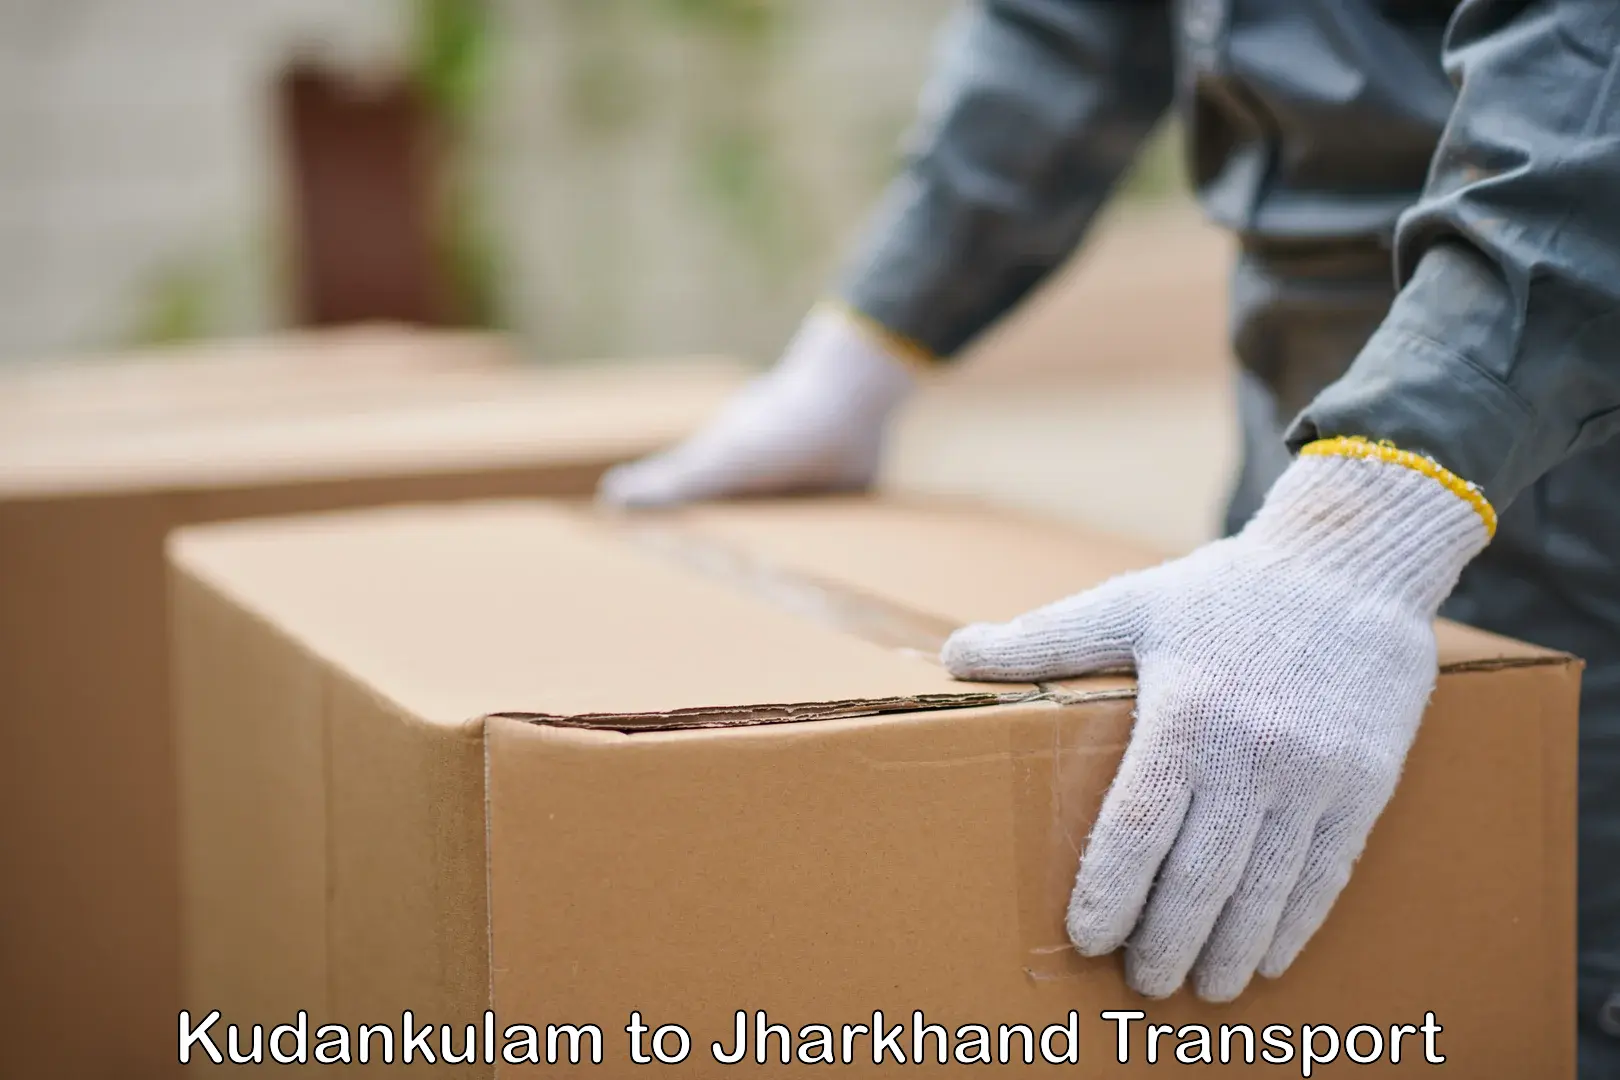 Transport in sharing Kudankulam to Jharkhand